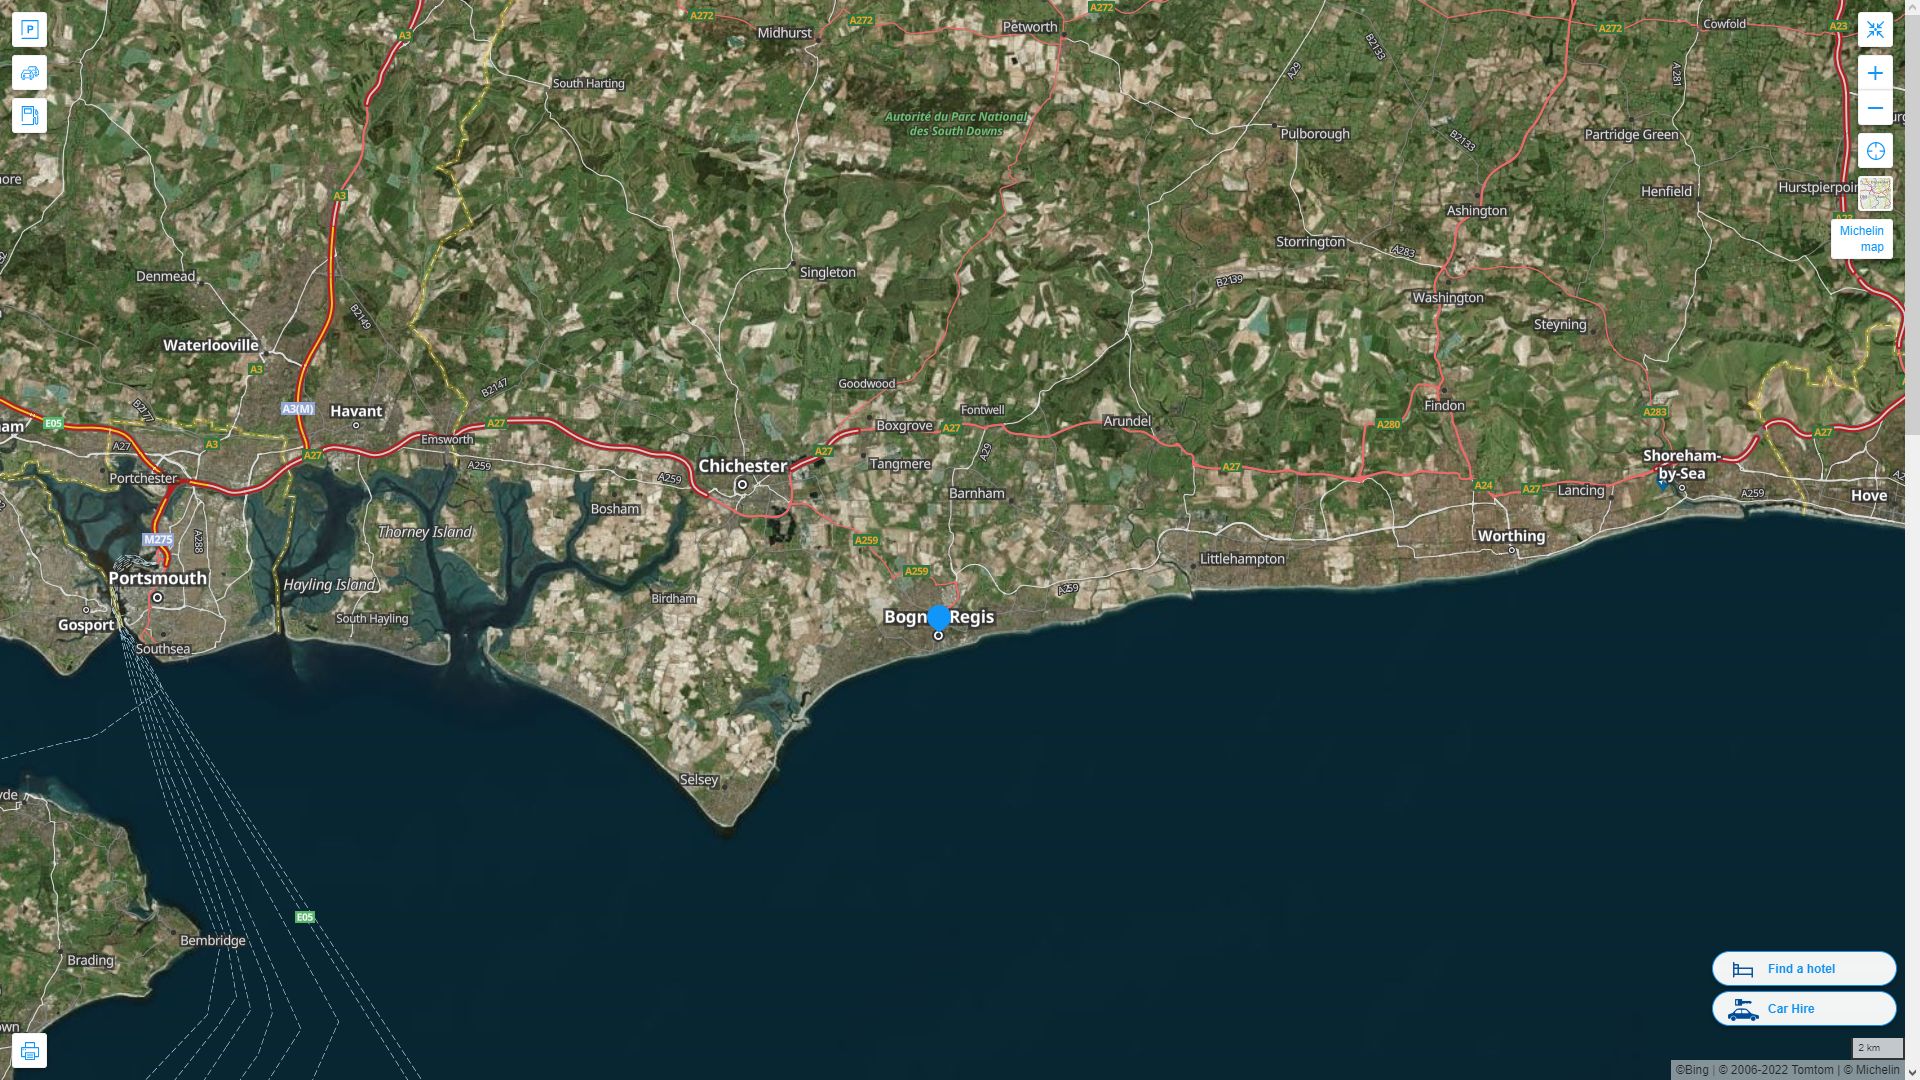 Bognor Regis Royaume Uni Autoroute et carte routiere avec vue satellite